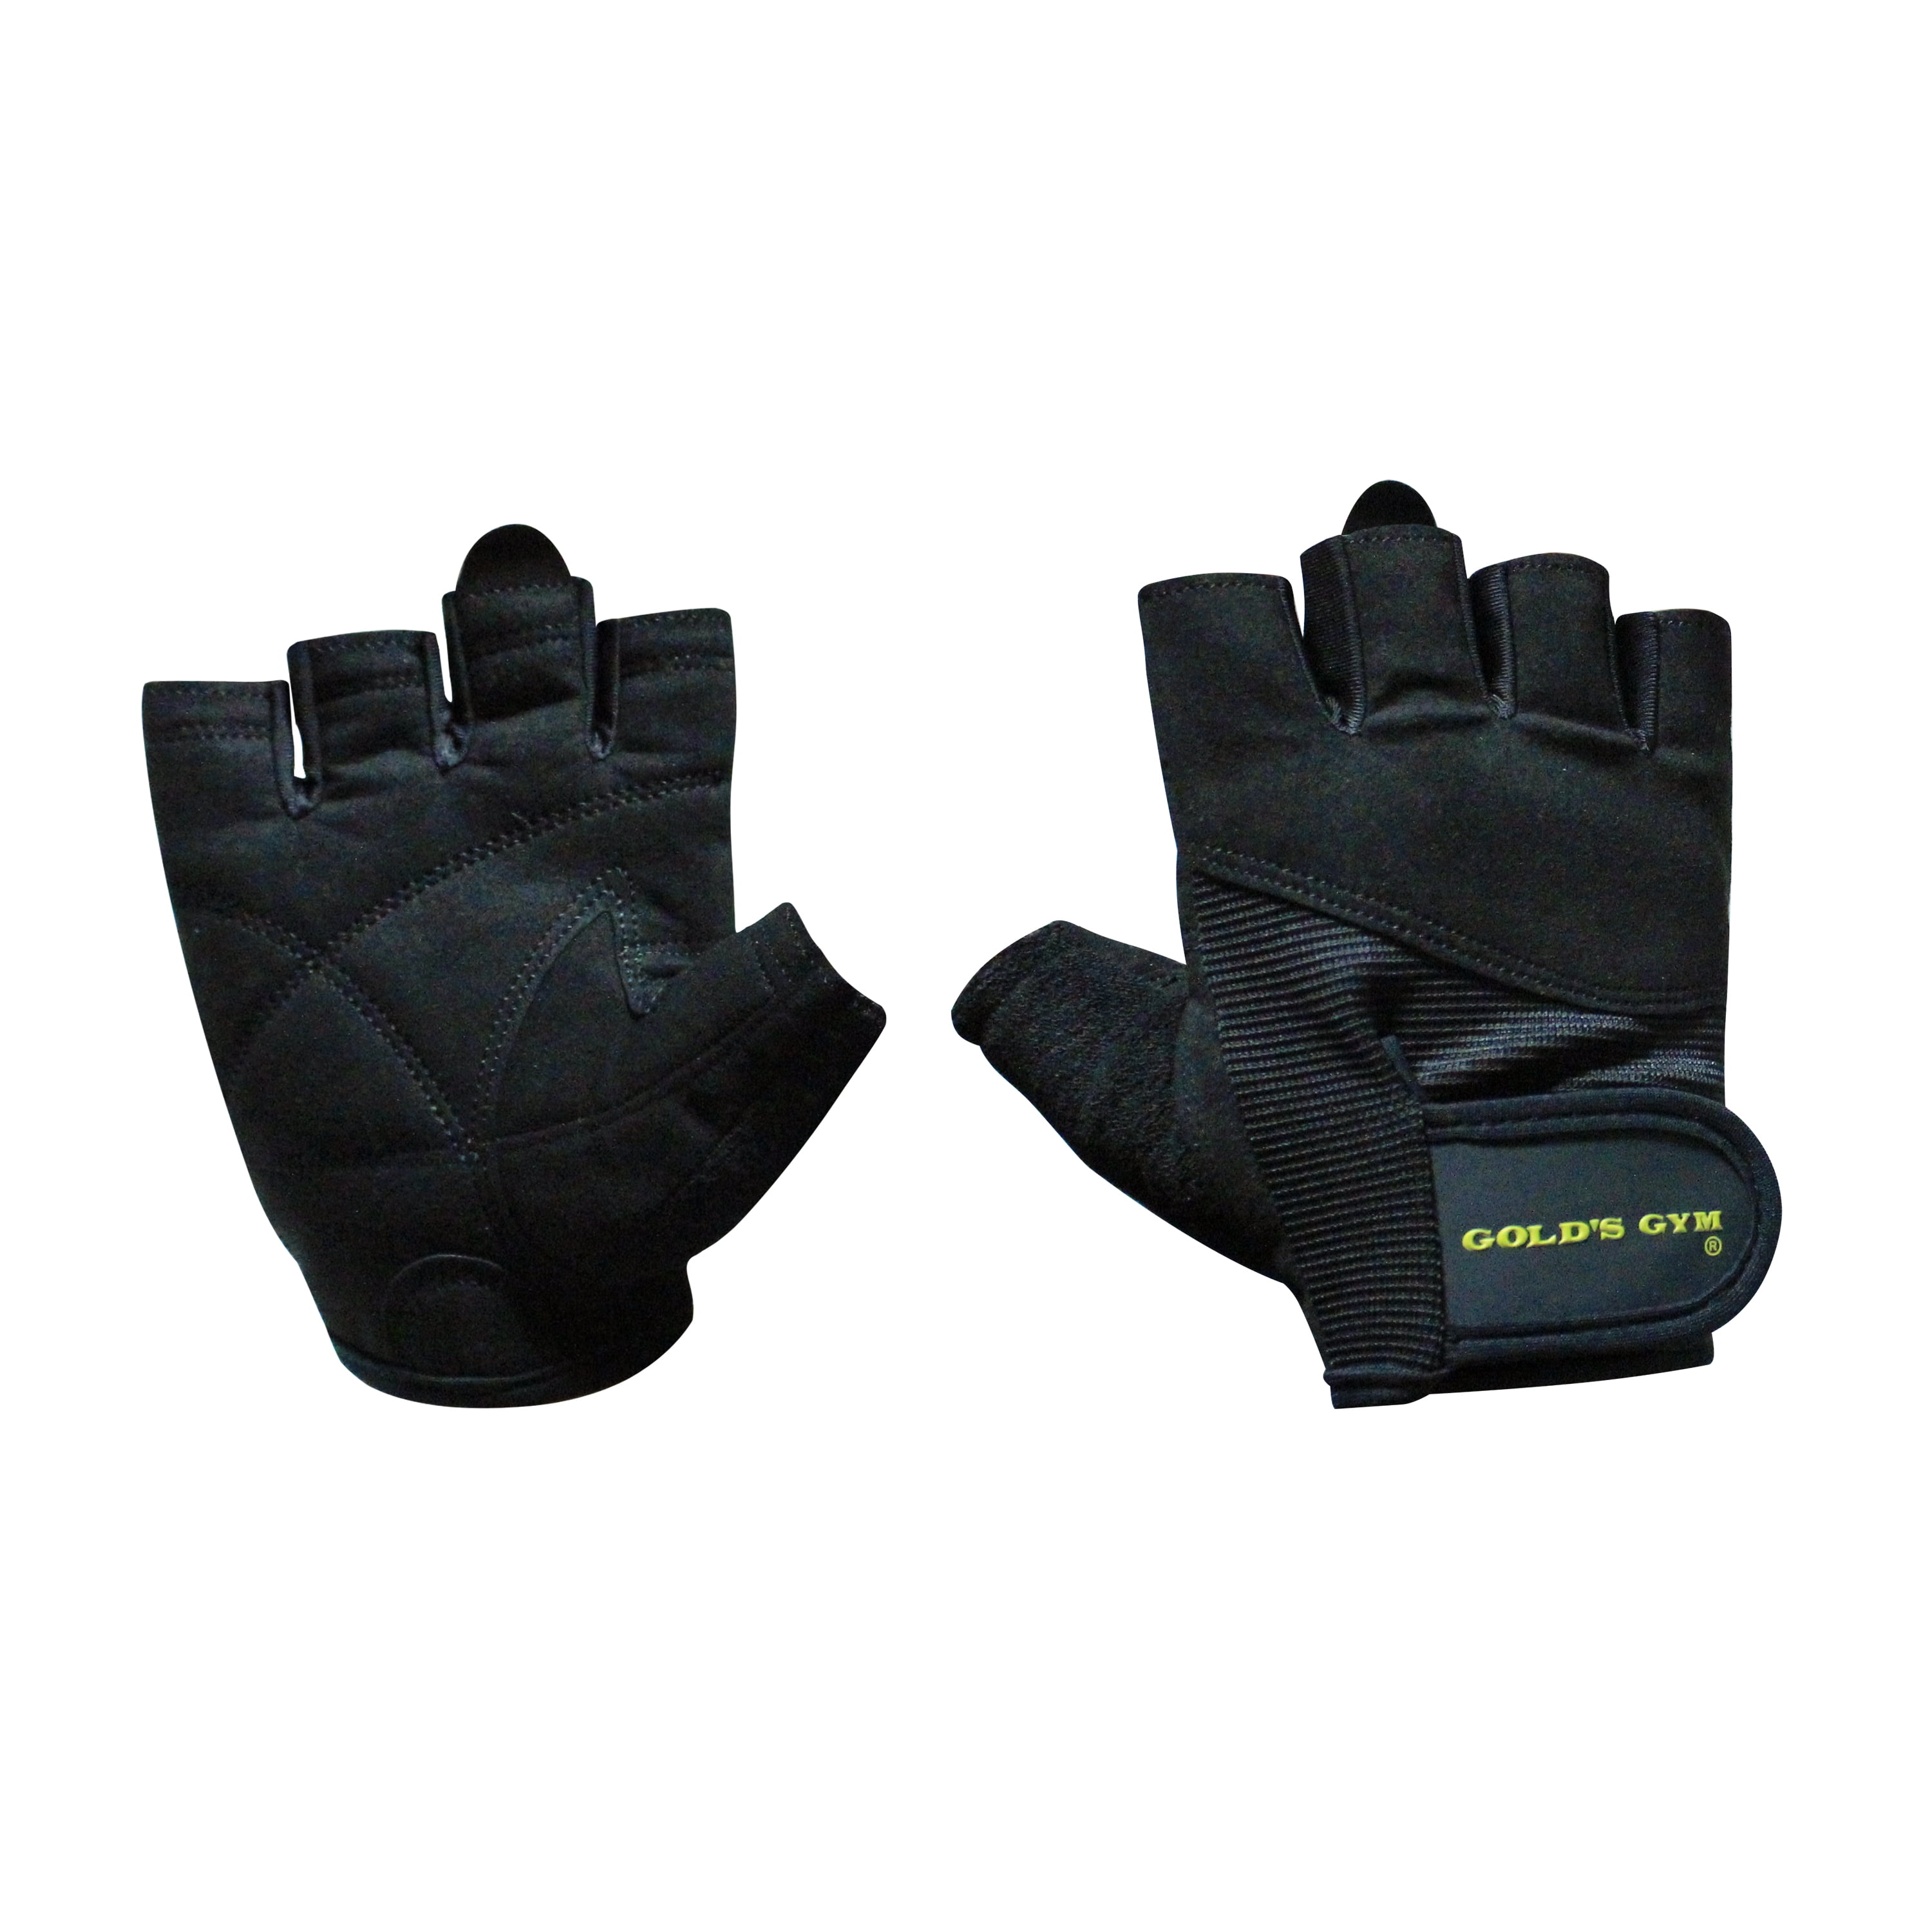 Men's ReliefGrip Fitness Fingerless Gloves SRG Pair Large 